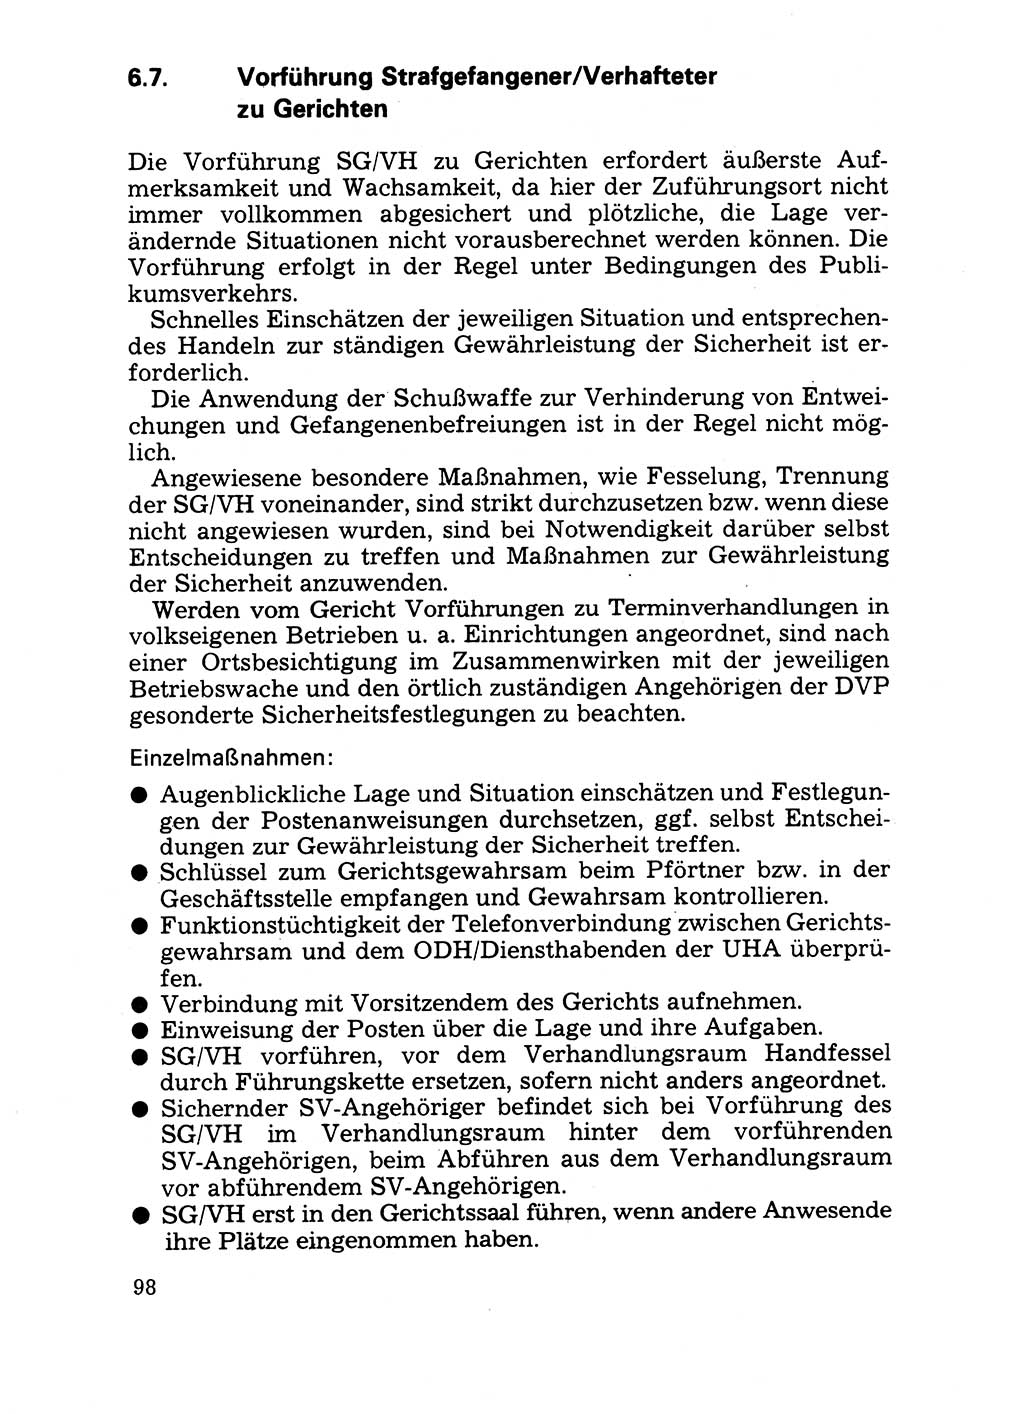 Handbuch für operative Dienste, Abteilung Strafvollzug (SV) [Ministerium des Innern (MdI) Deutsche Demokratische Republik (DDR)] 1981, Seite 98 (Hb. op. D. Abt. SV MdI DDR 1981, S. 98)